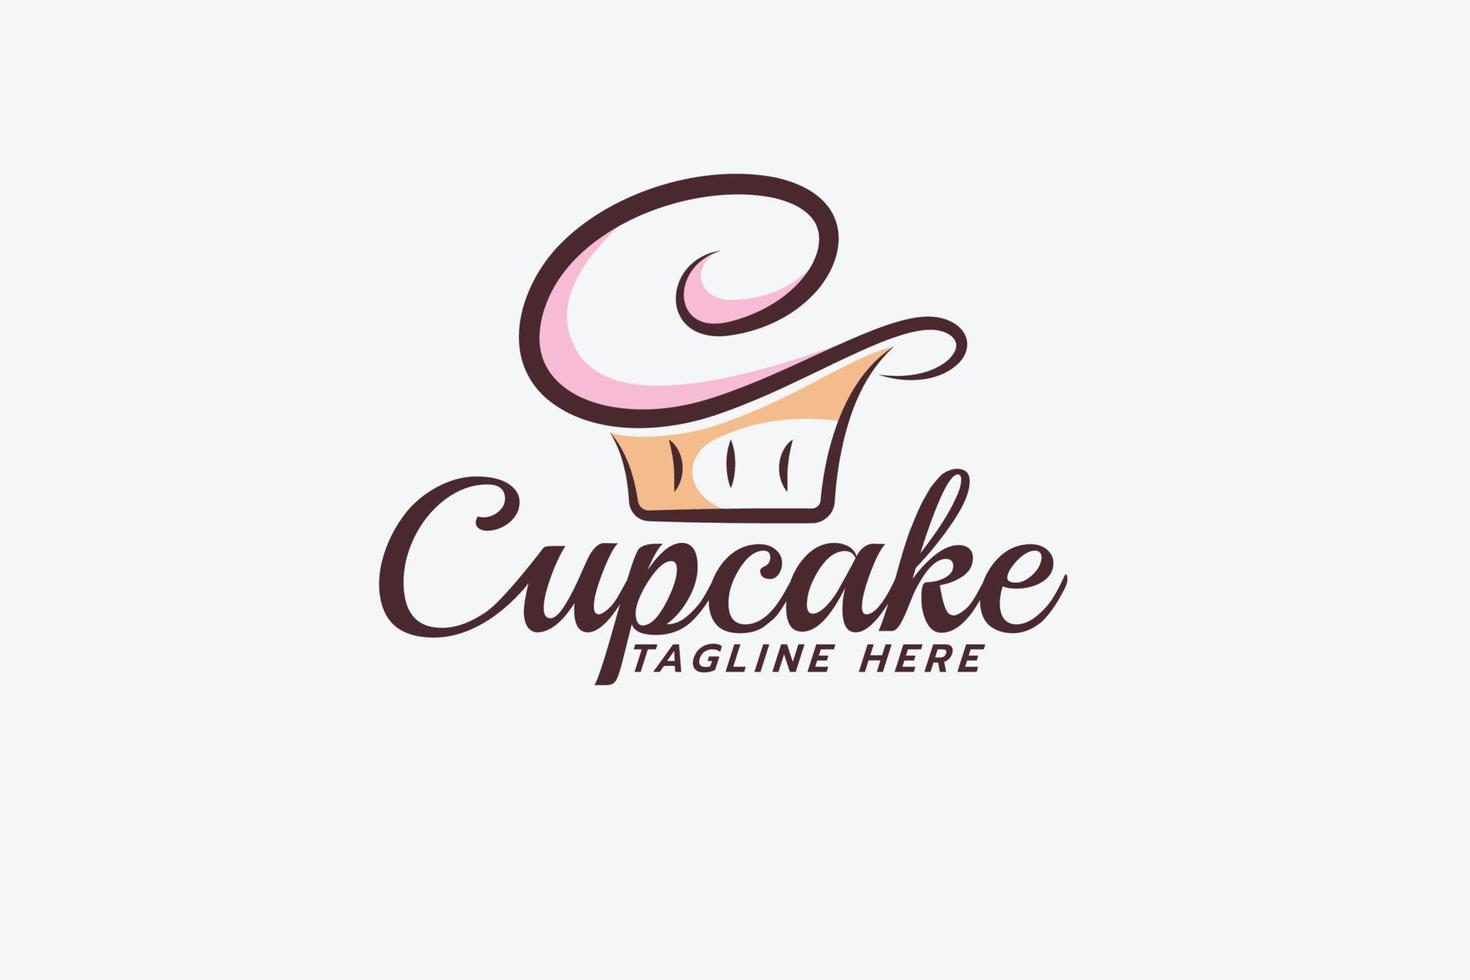 un simple logo cupcake avec une combinaison d'un cupcake et d'une lettre c pour toute entreprise, en particulier pour la boulangerie, le café, la pâtisserie, etc. vecteur